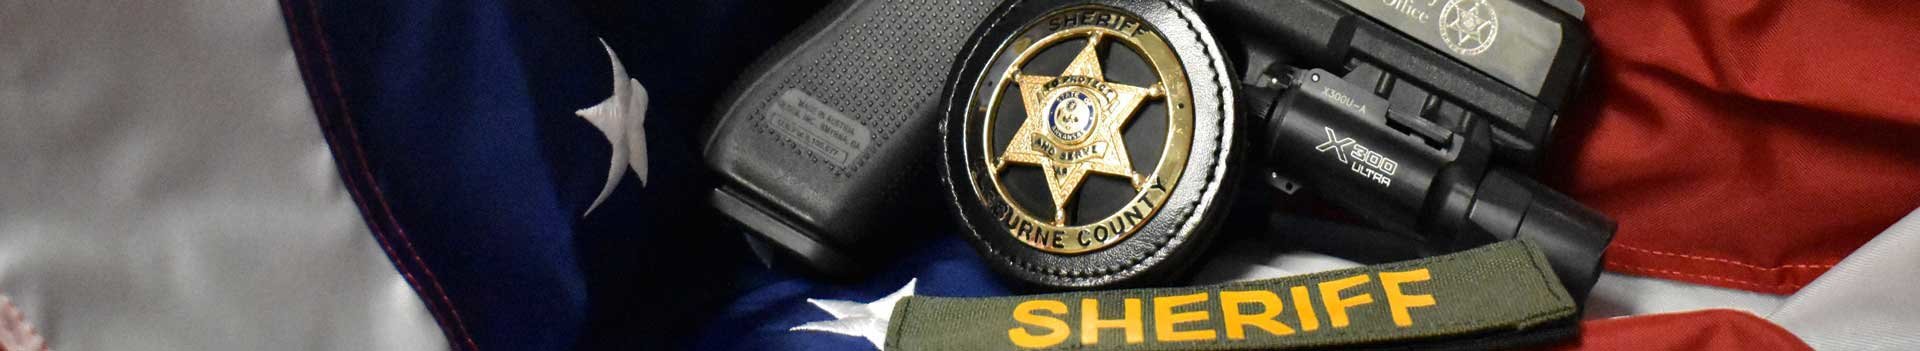 Sheriff Gun and Badge